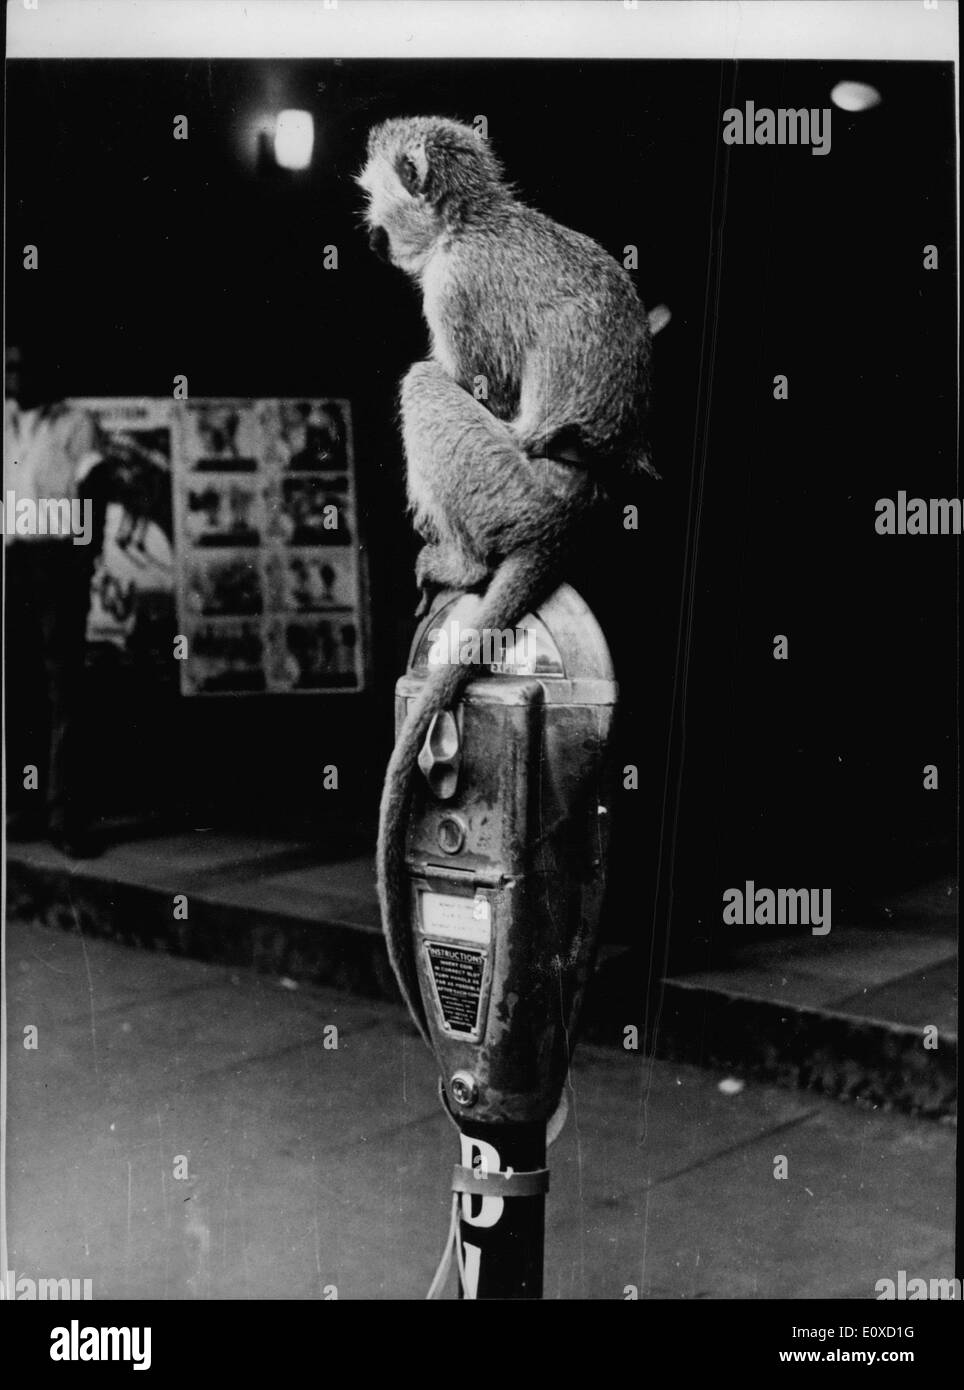 16. April 1966 - eingegeben, Monkey Parken In Nairobi während seines Meisters Kino in Nairobi Kenyatta Hauptstraße über die Filme zu erkundigen... einen besseren Ort, sein Haustier Affen als auf einem nahe gelegenen Parkuhr parken. Der Stadt parken Inspektoren, ratlos, wissen genau was zu tun, da es "keinen Präzedenzfall '' so erlaubt sie der Affe, in Frieden zu bleiben-obwohl seine '' Time'' abgelaufen war. Stockfoto